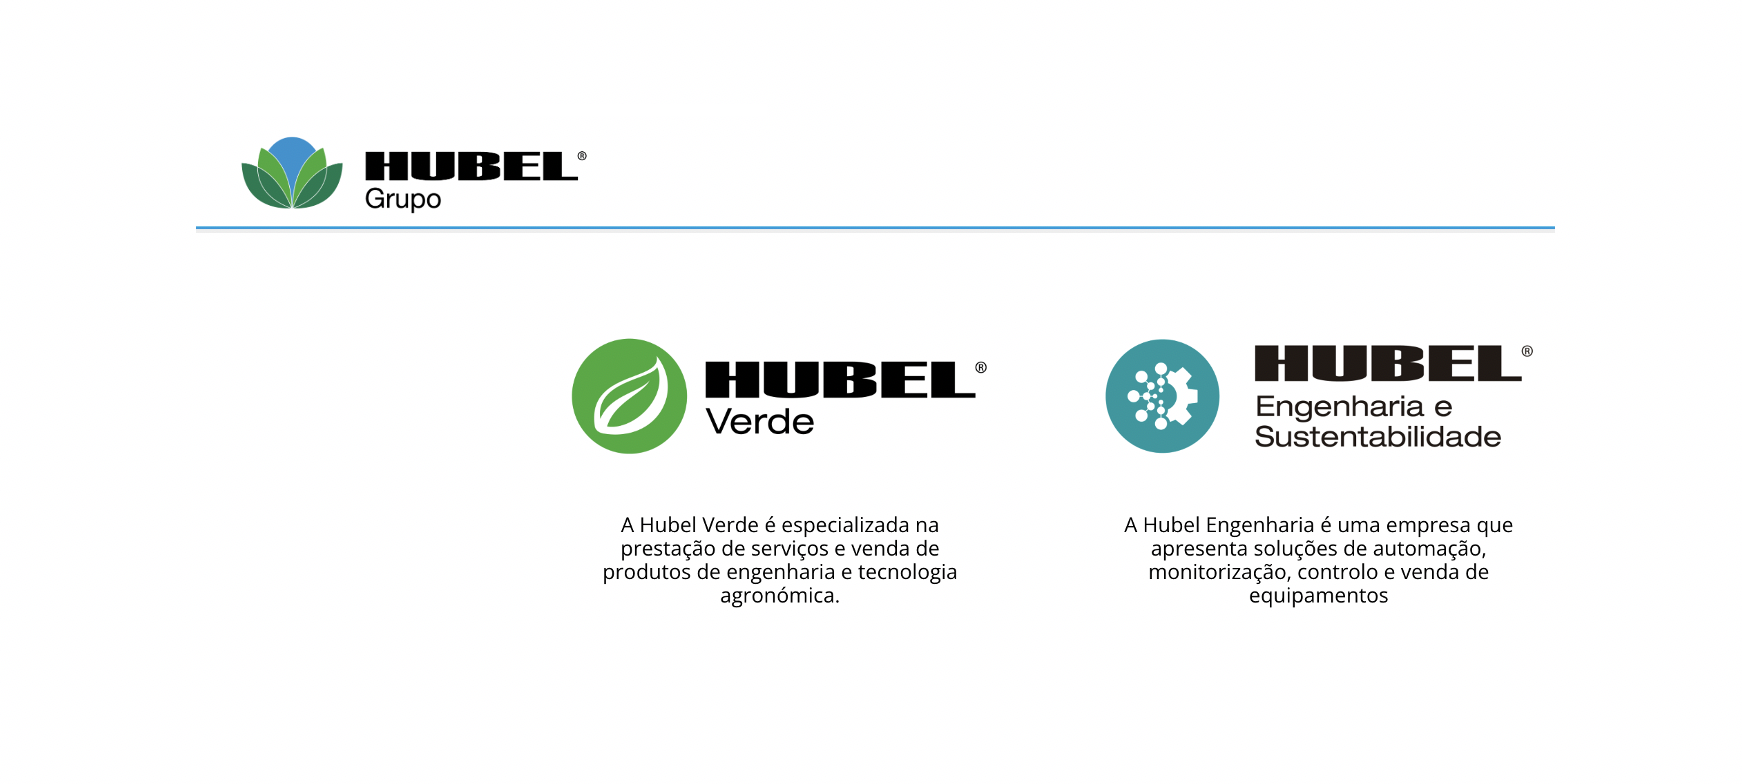 Tal como há 40 anos, Grupo Hubel continua a assentar atividade em produtos que aportem desenvolvimento tecnológico